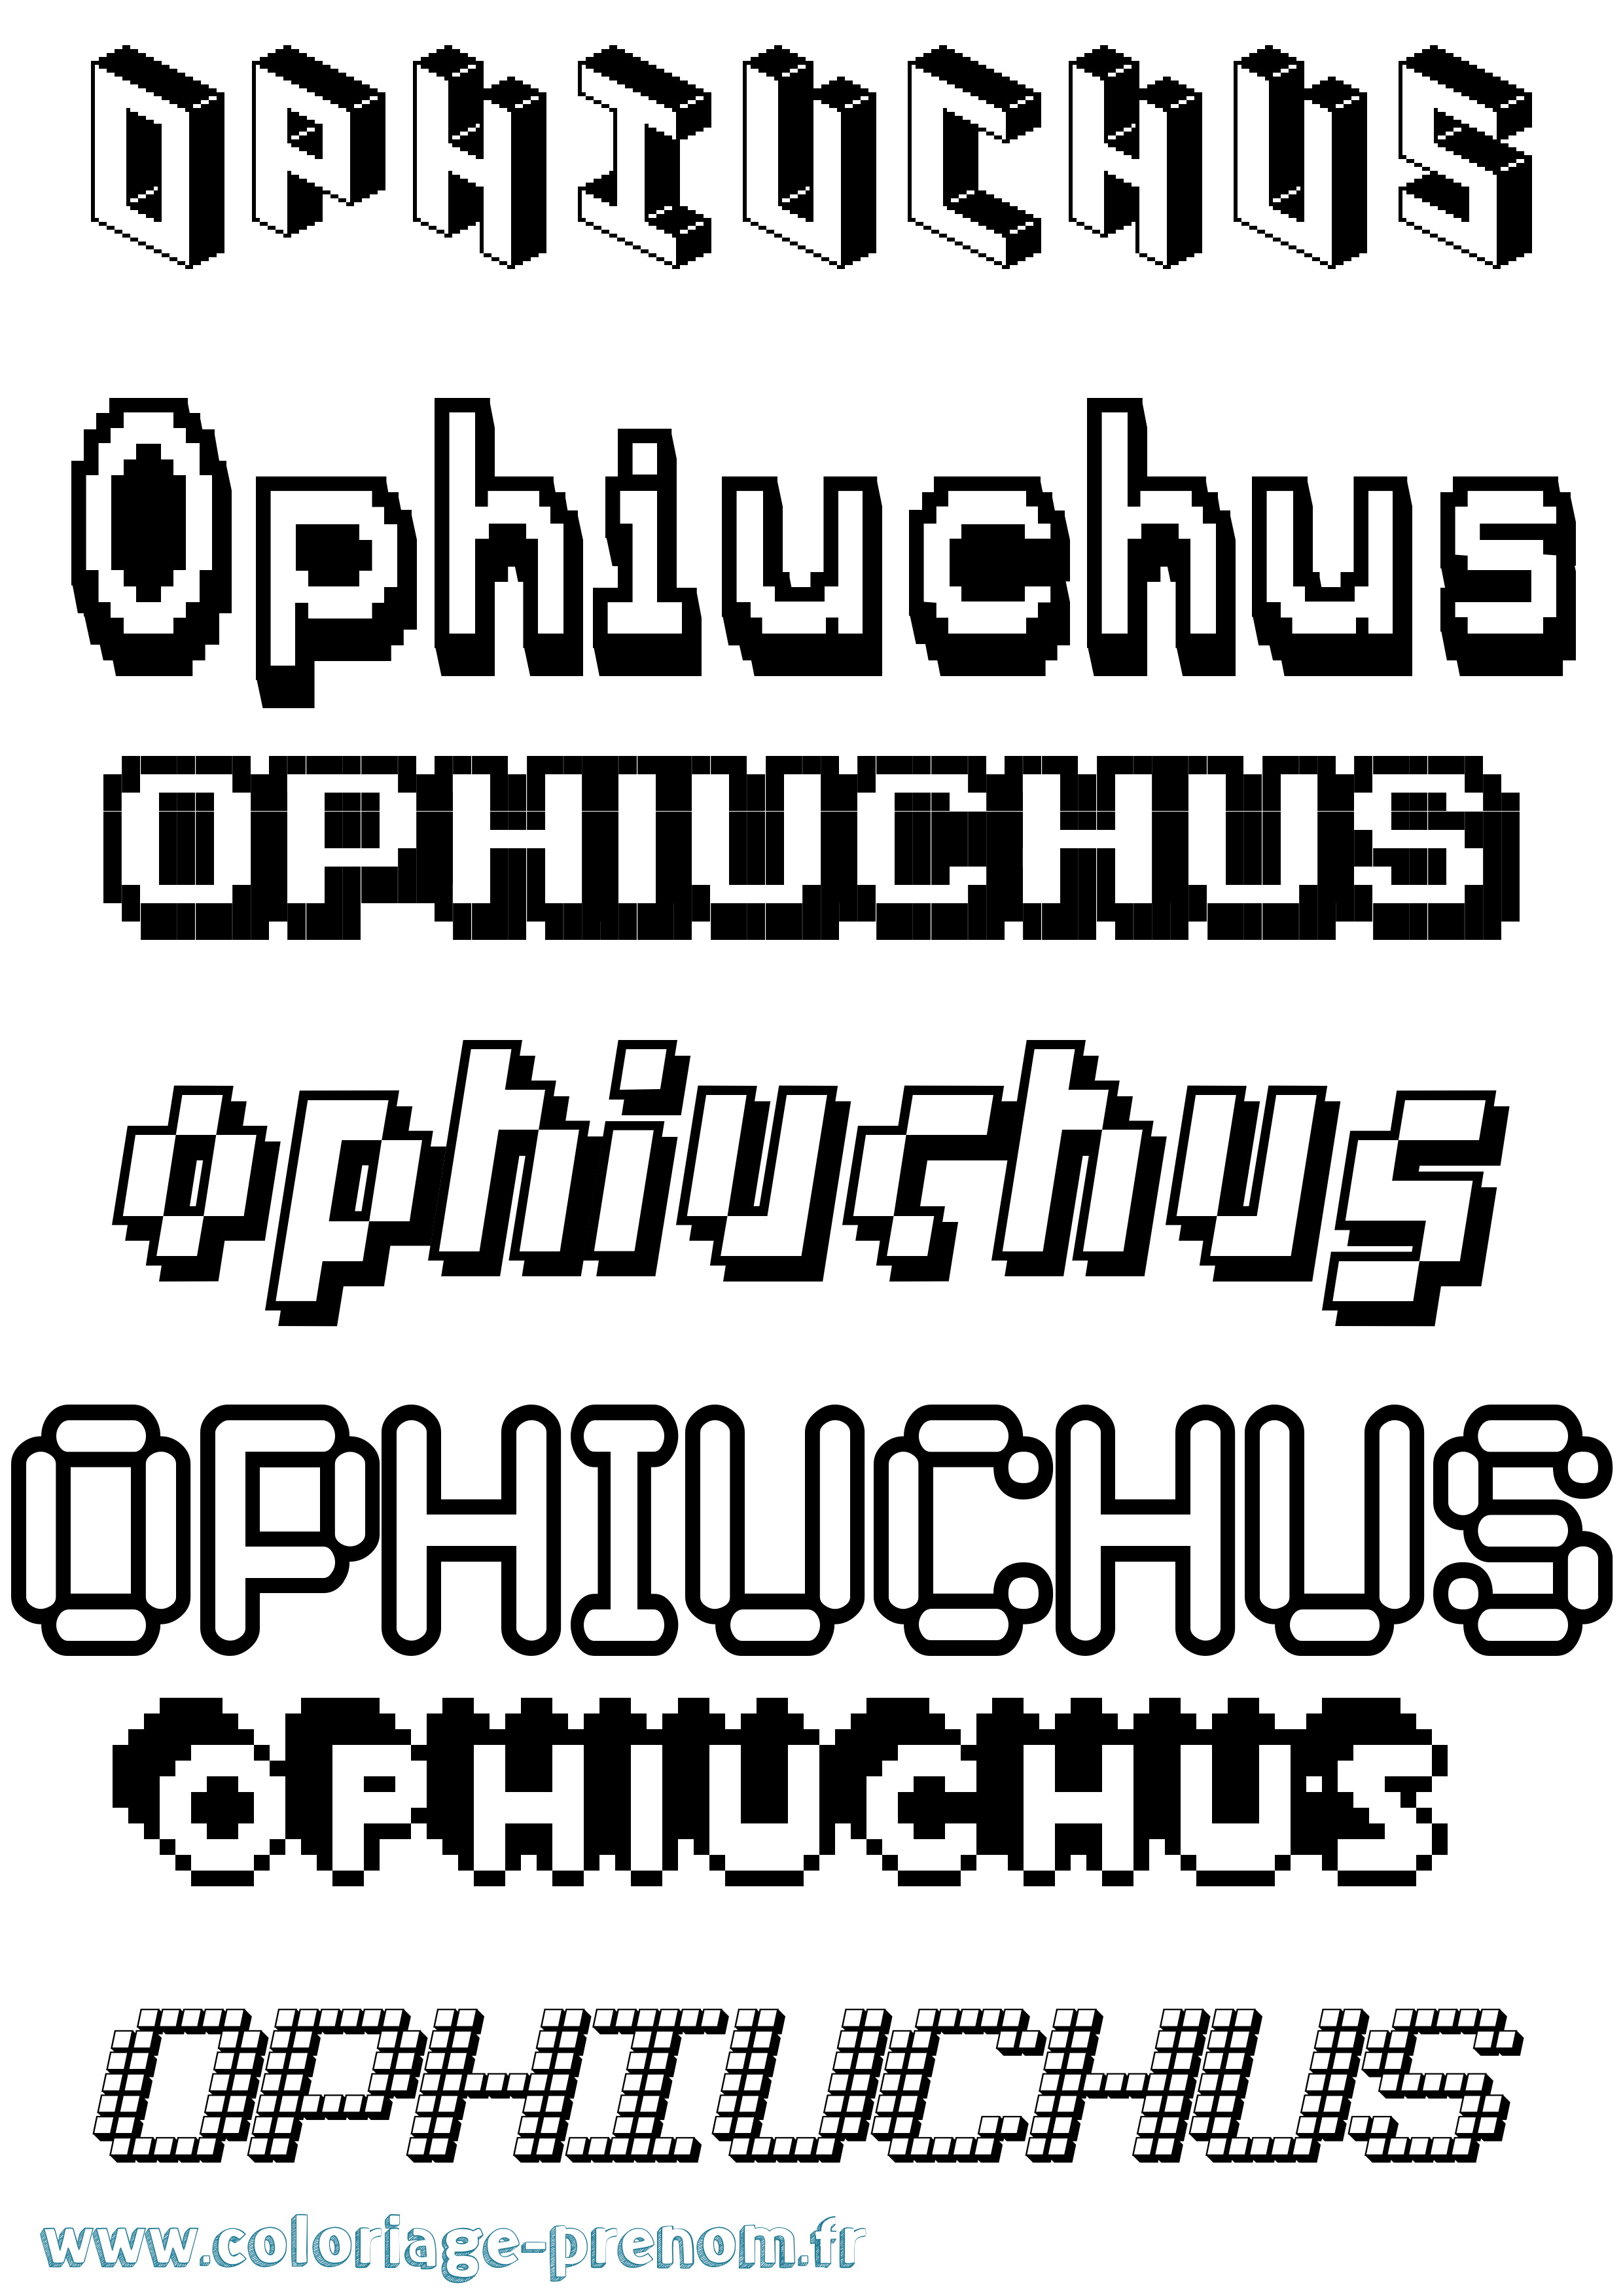 Coloriage prénom Ophiuchus Pixel